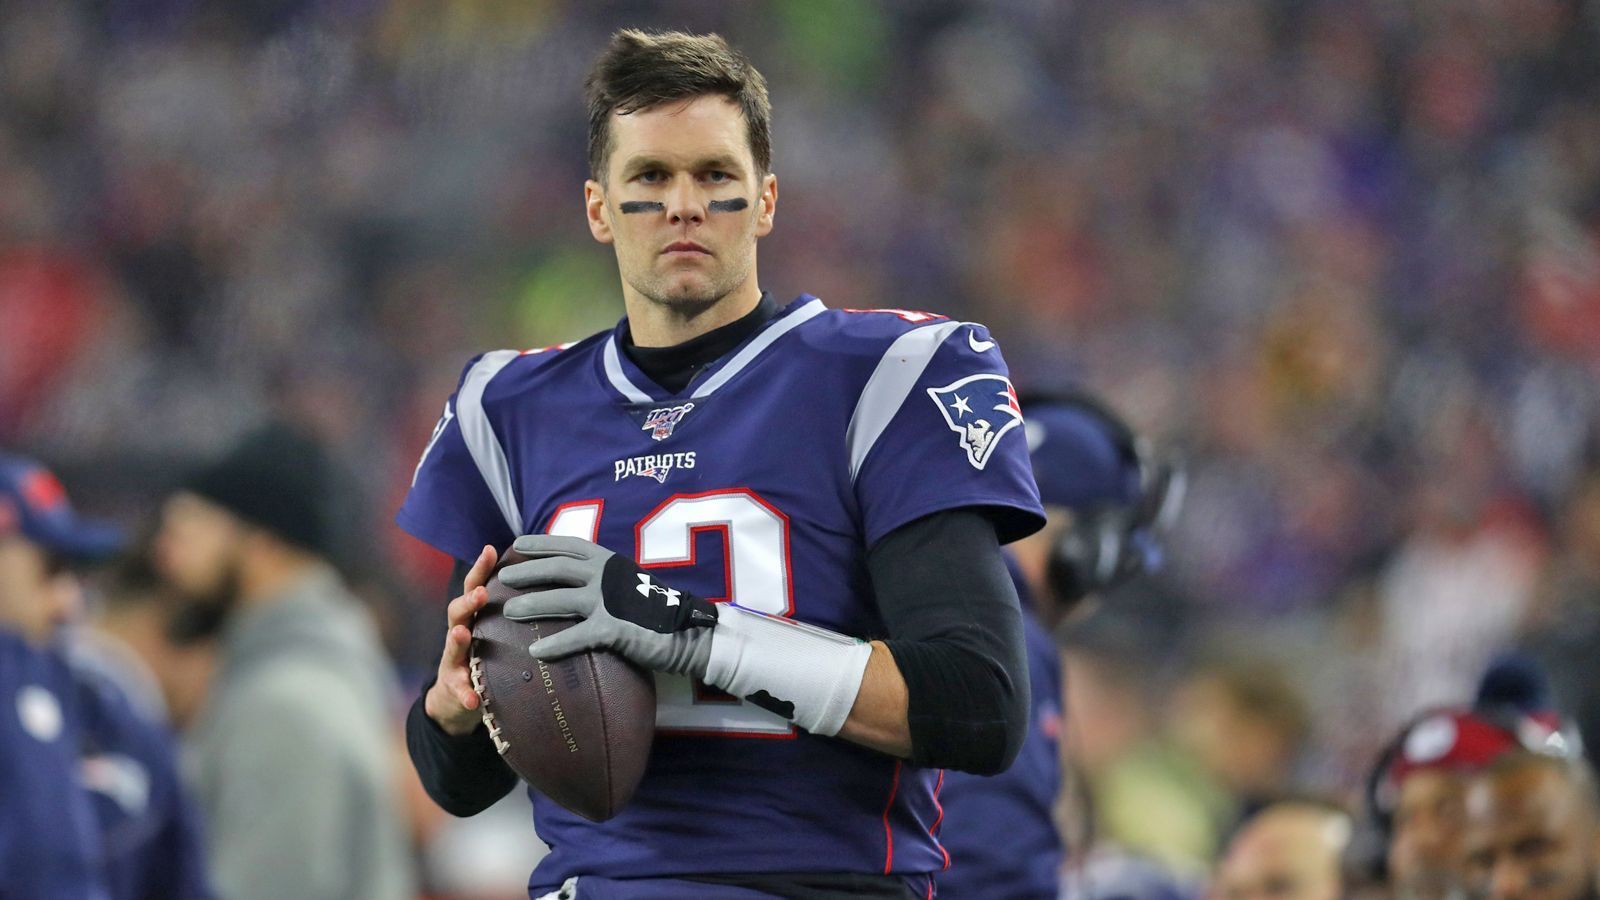 
                <strong>Tom Brady (Quarterback) - 20 Saisons</strong><br>
                Erste Saison: 2000Bisher letzte Saison: 2019In der NFL aktiv für: New England Patriots
              